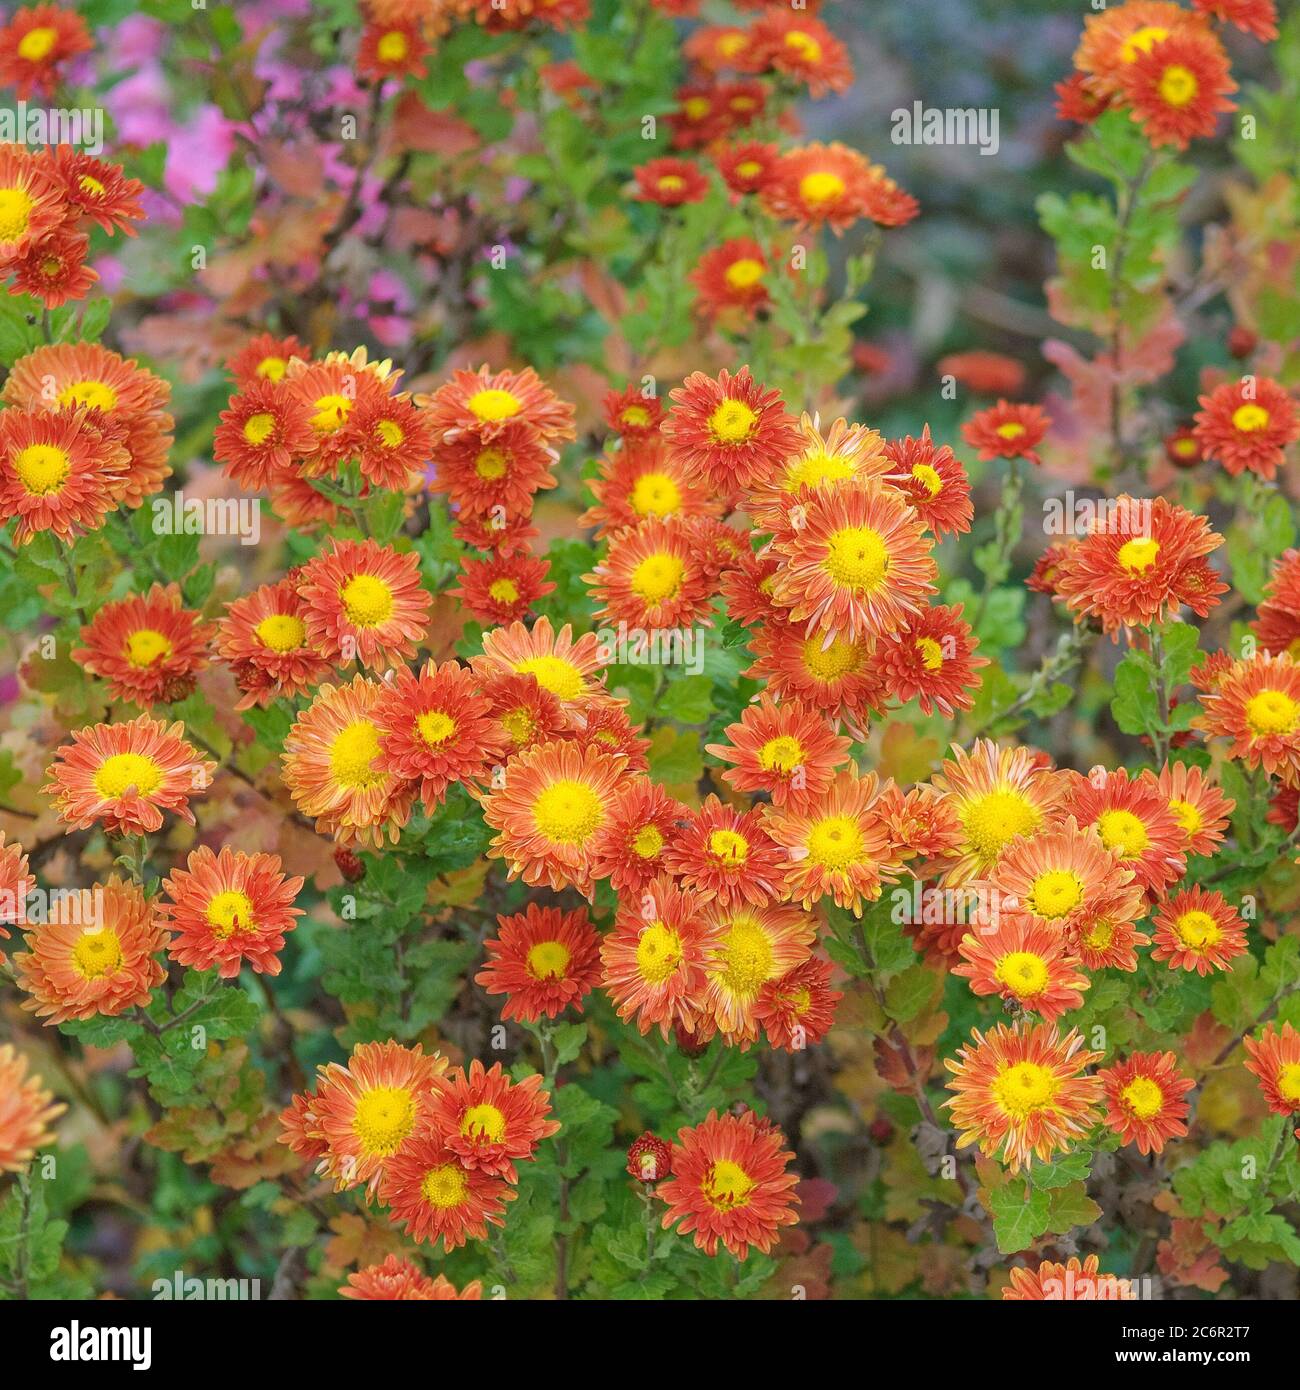 Chrysantheme Chrysanthemum Vreneli, Chrysanthemum Chrysanthemum Vreneli Stock Photo